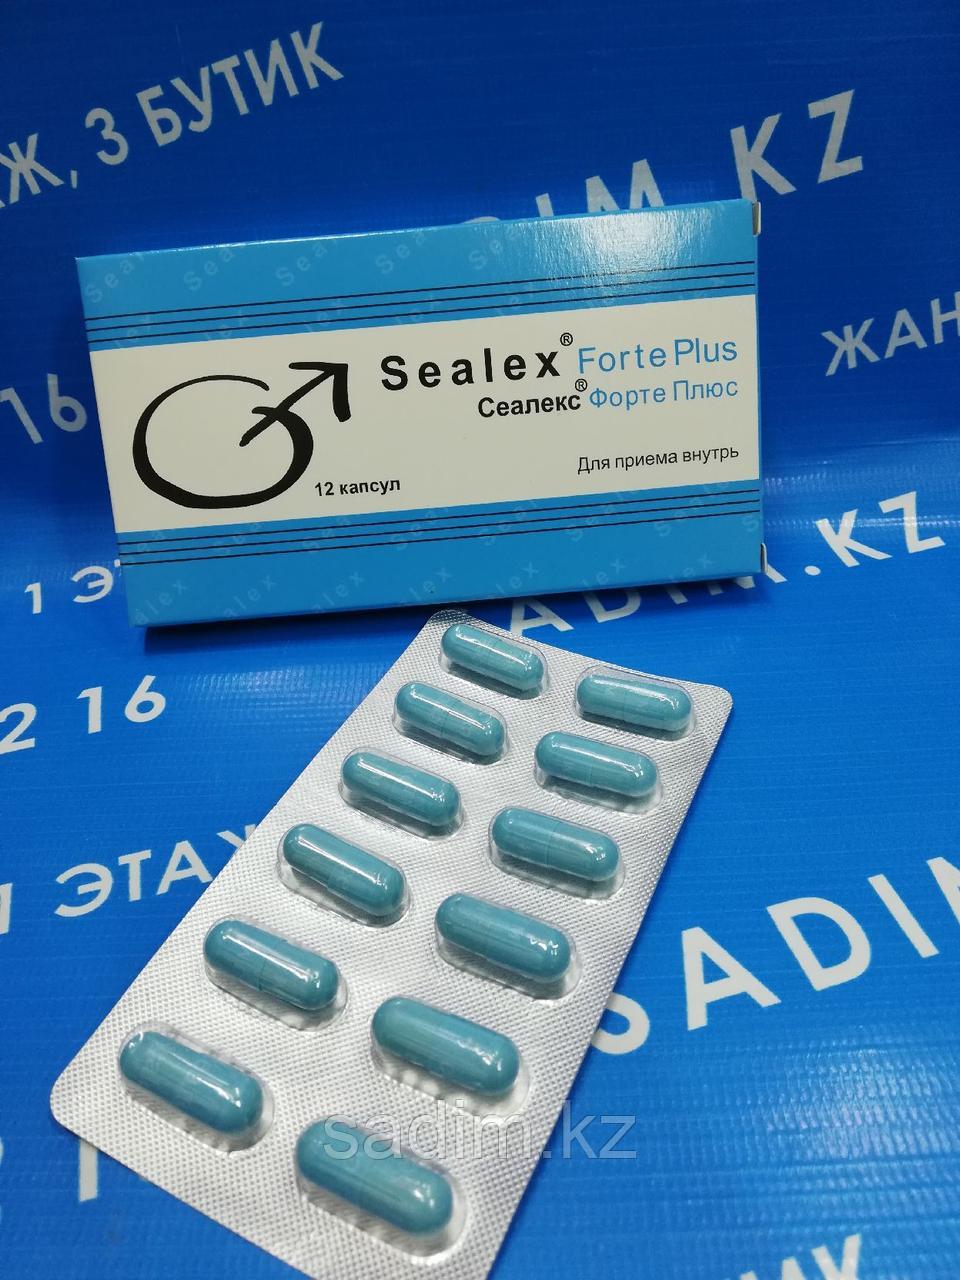 Sealex Forte Plus